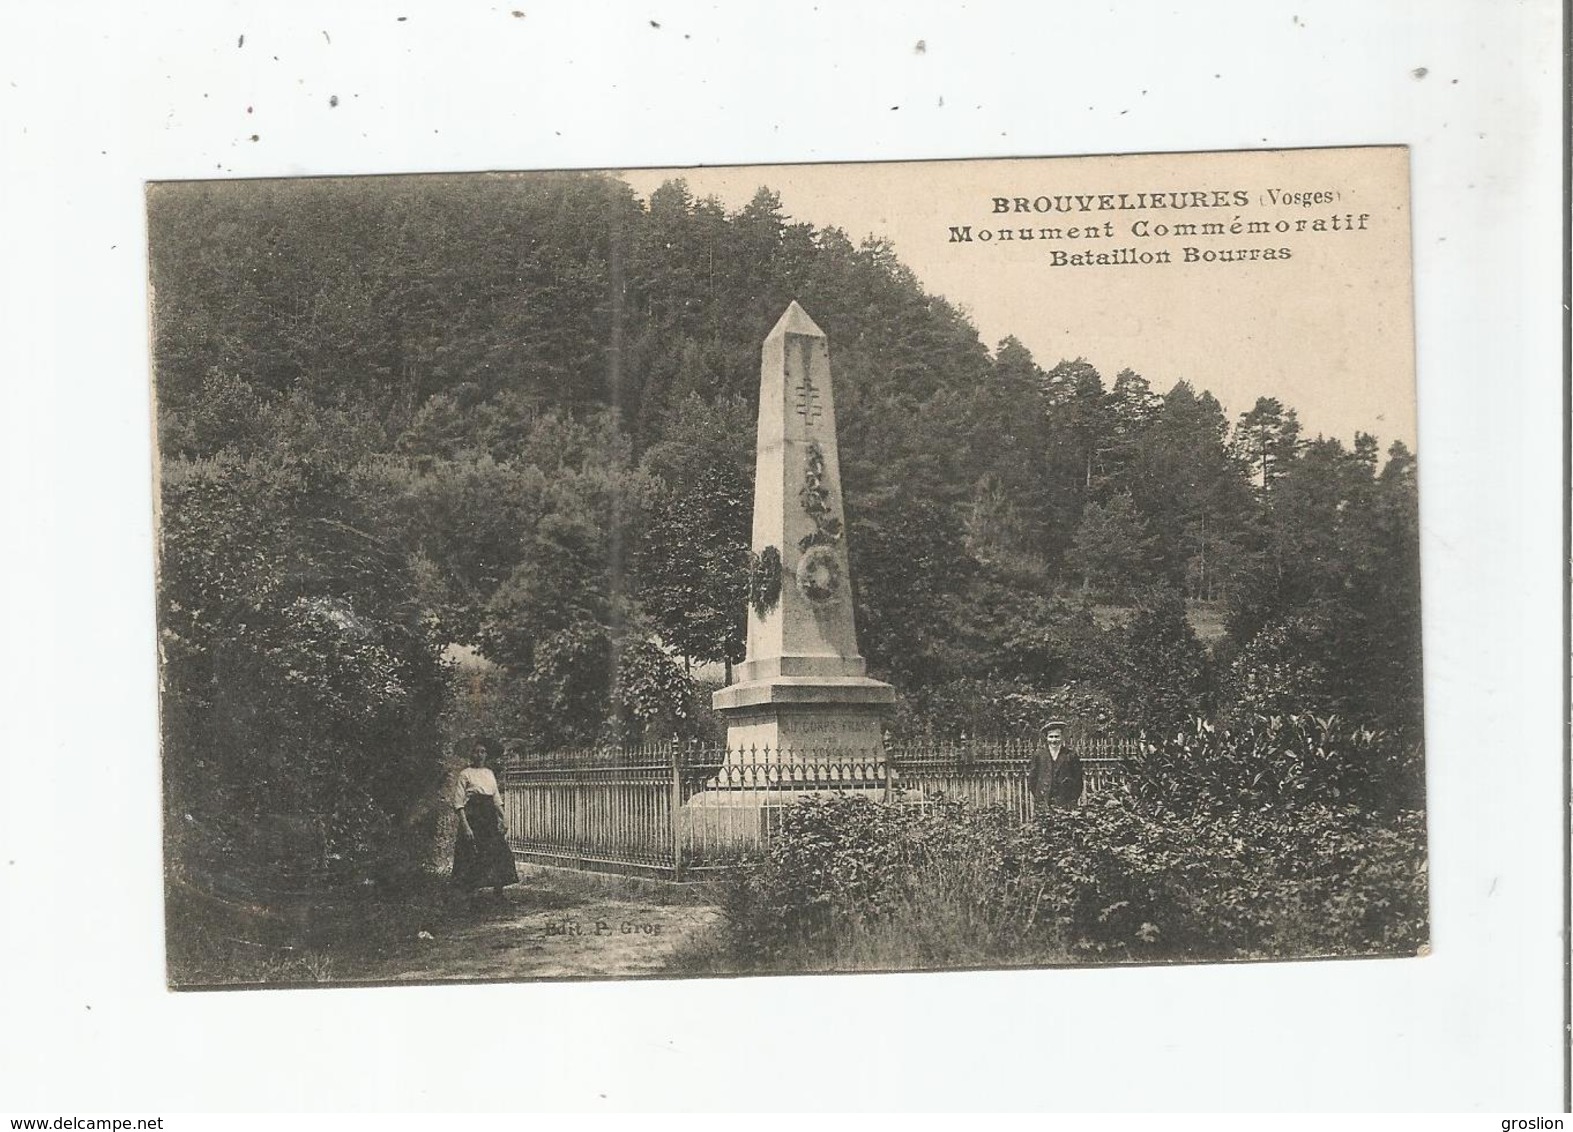 BROUVELIEURES (VOSGES)  MONUMENT COMMEMORATIF BATAILLON BOURRAS - Brouvelieures